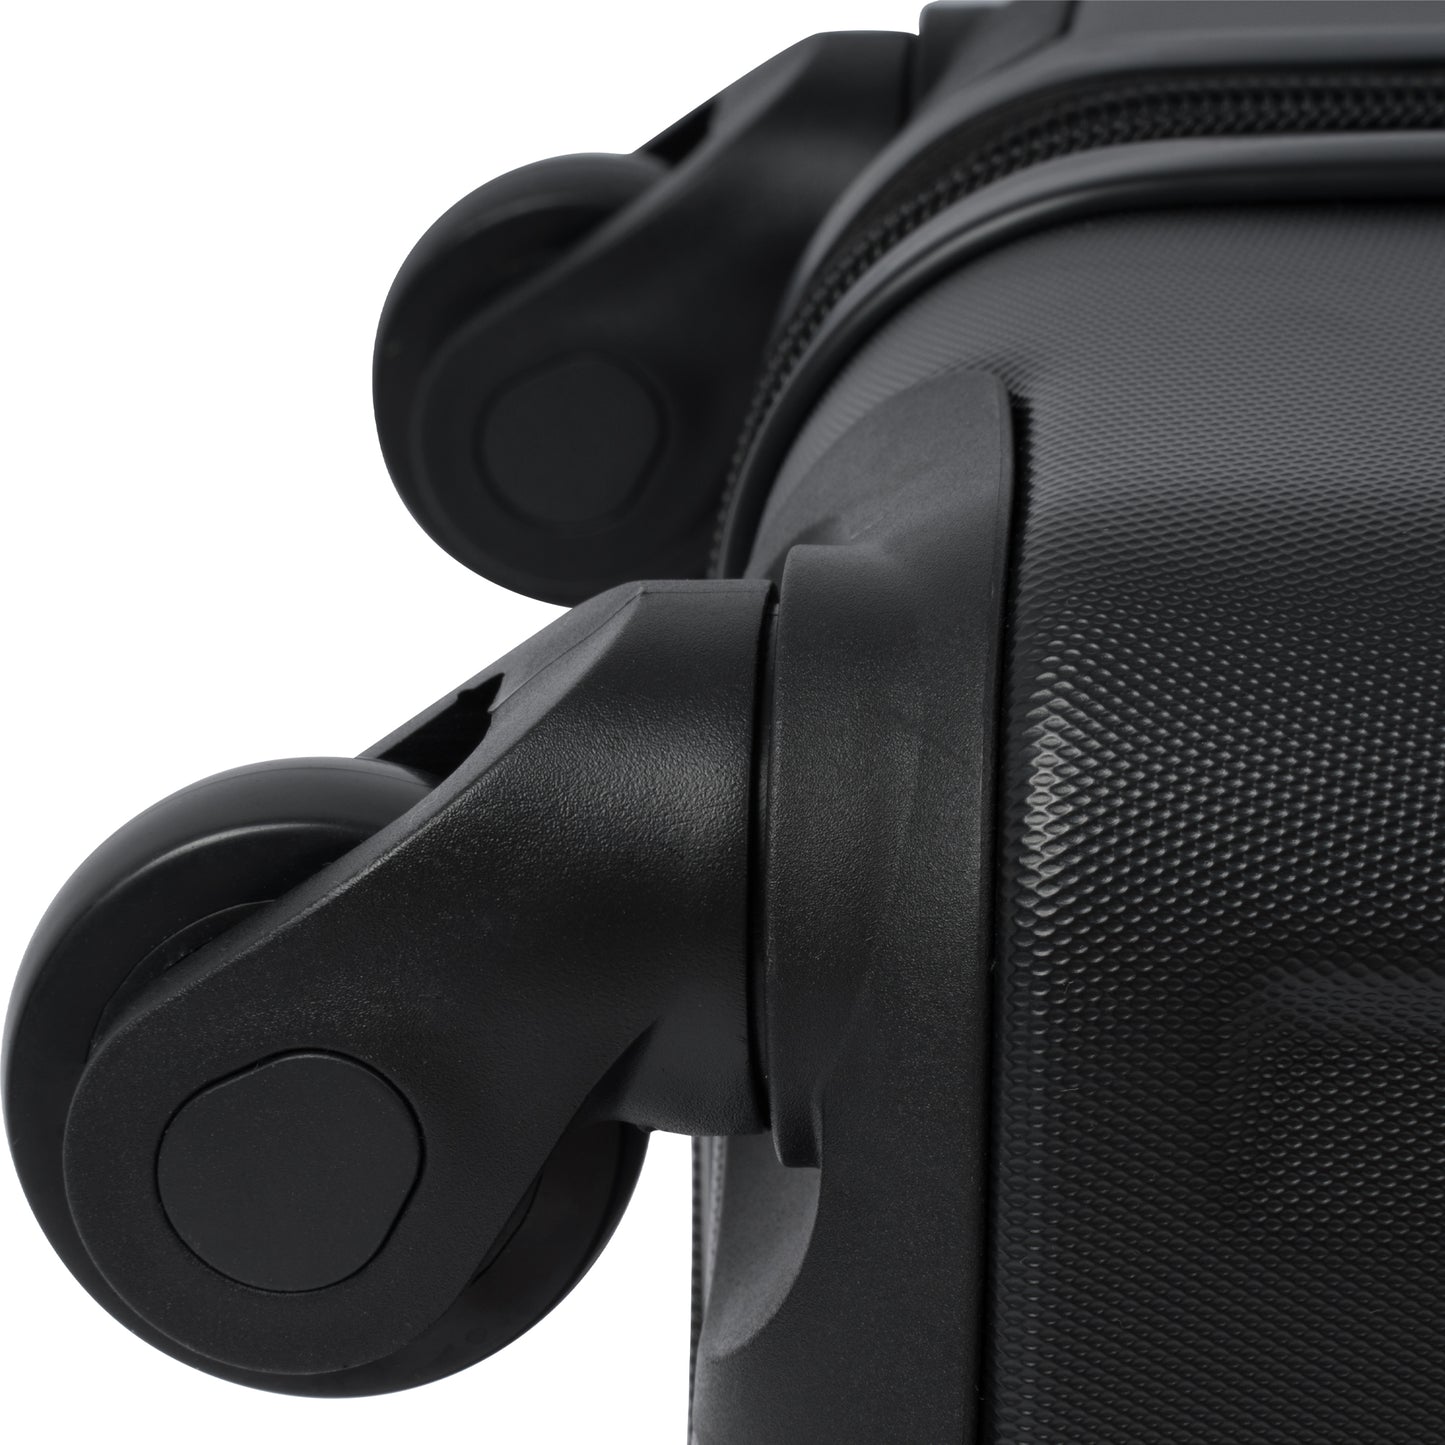 Valise rigide à roulettes avec serrure TSA légère et extensible 28'' noir + ABS